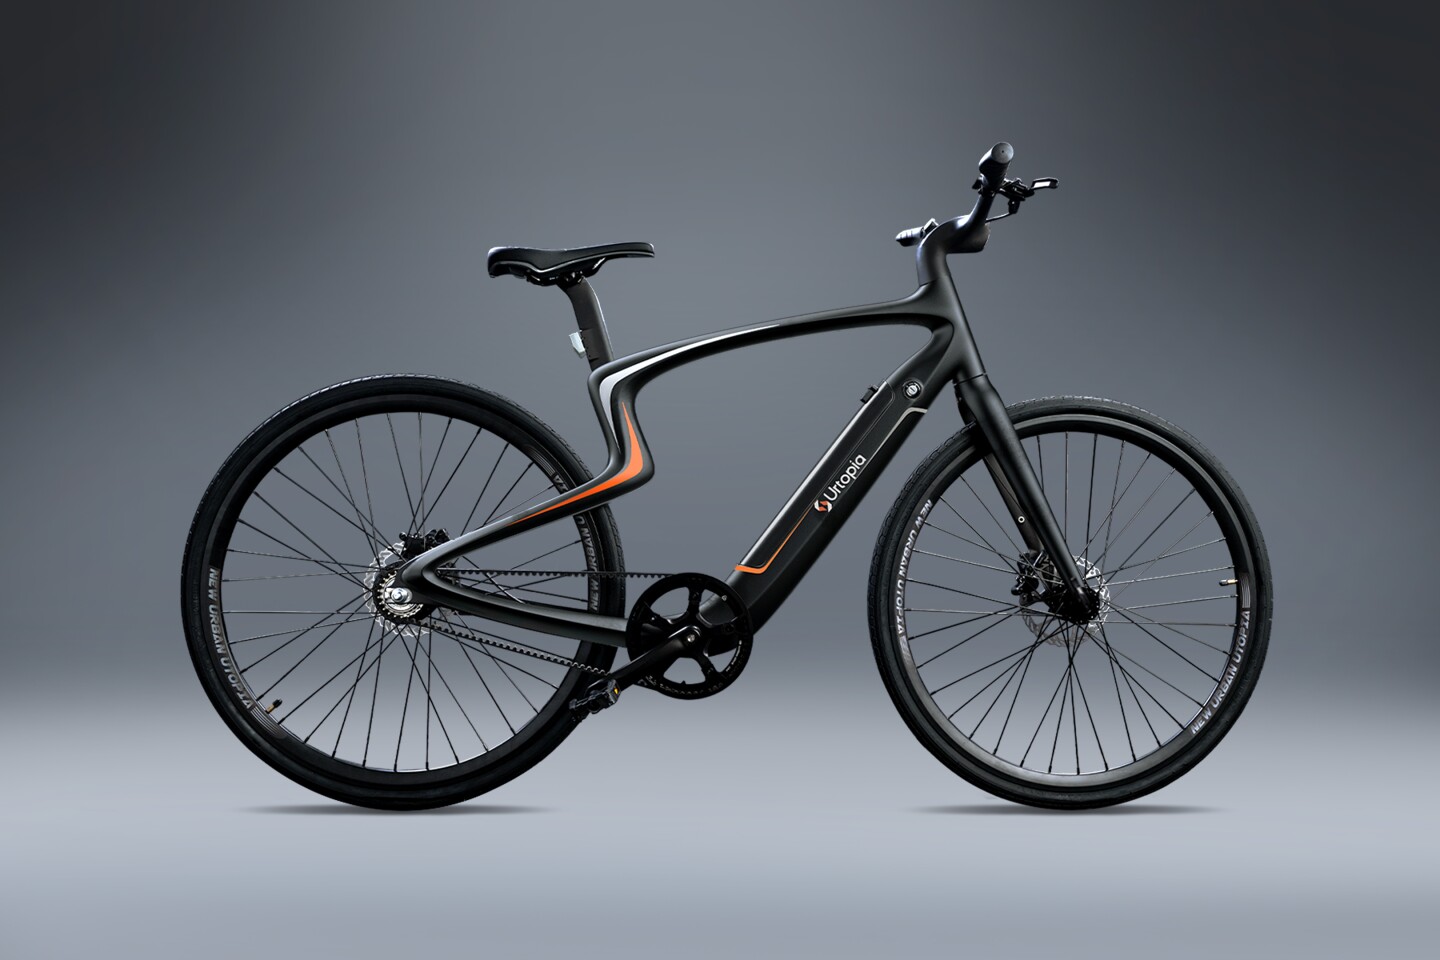 Đây là Urtopia - xe đạp điện làm bằng carbon, nặng 13.6kg, có radar, voice control & GPS, giá từ $2k